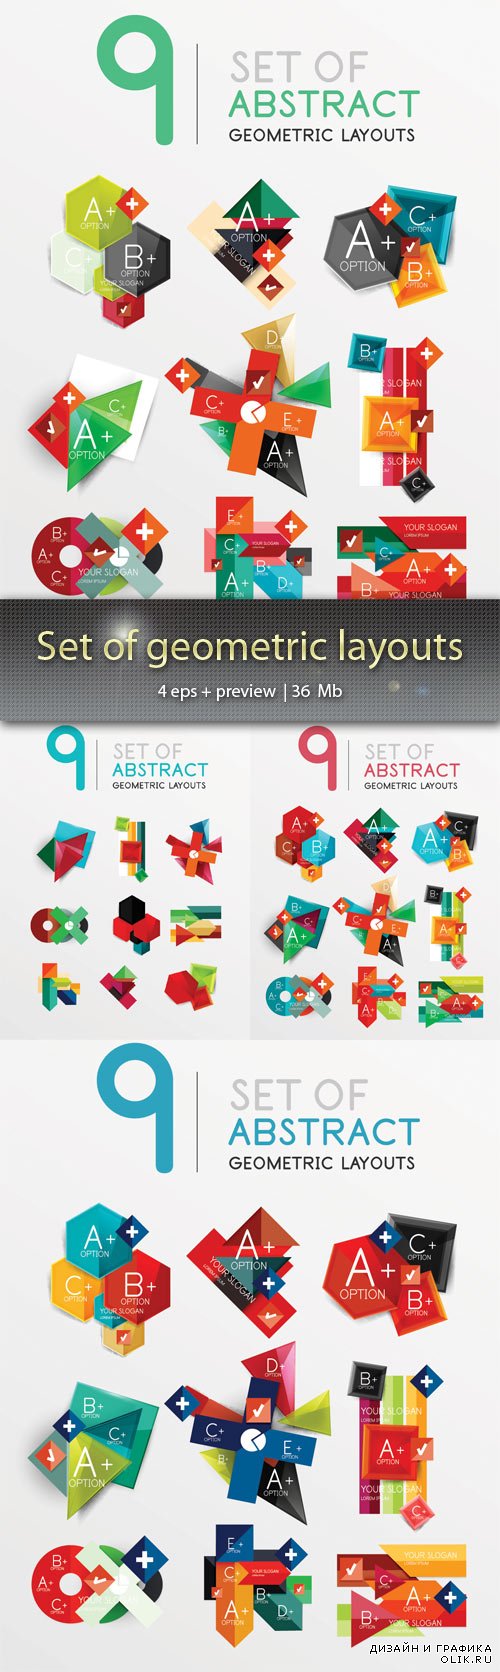 Набор геометрических макетов 2  - Set of geometric layouts 2